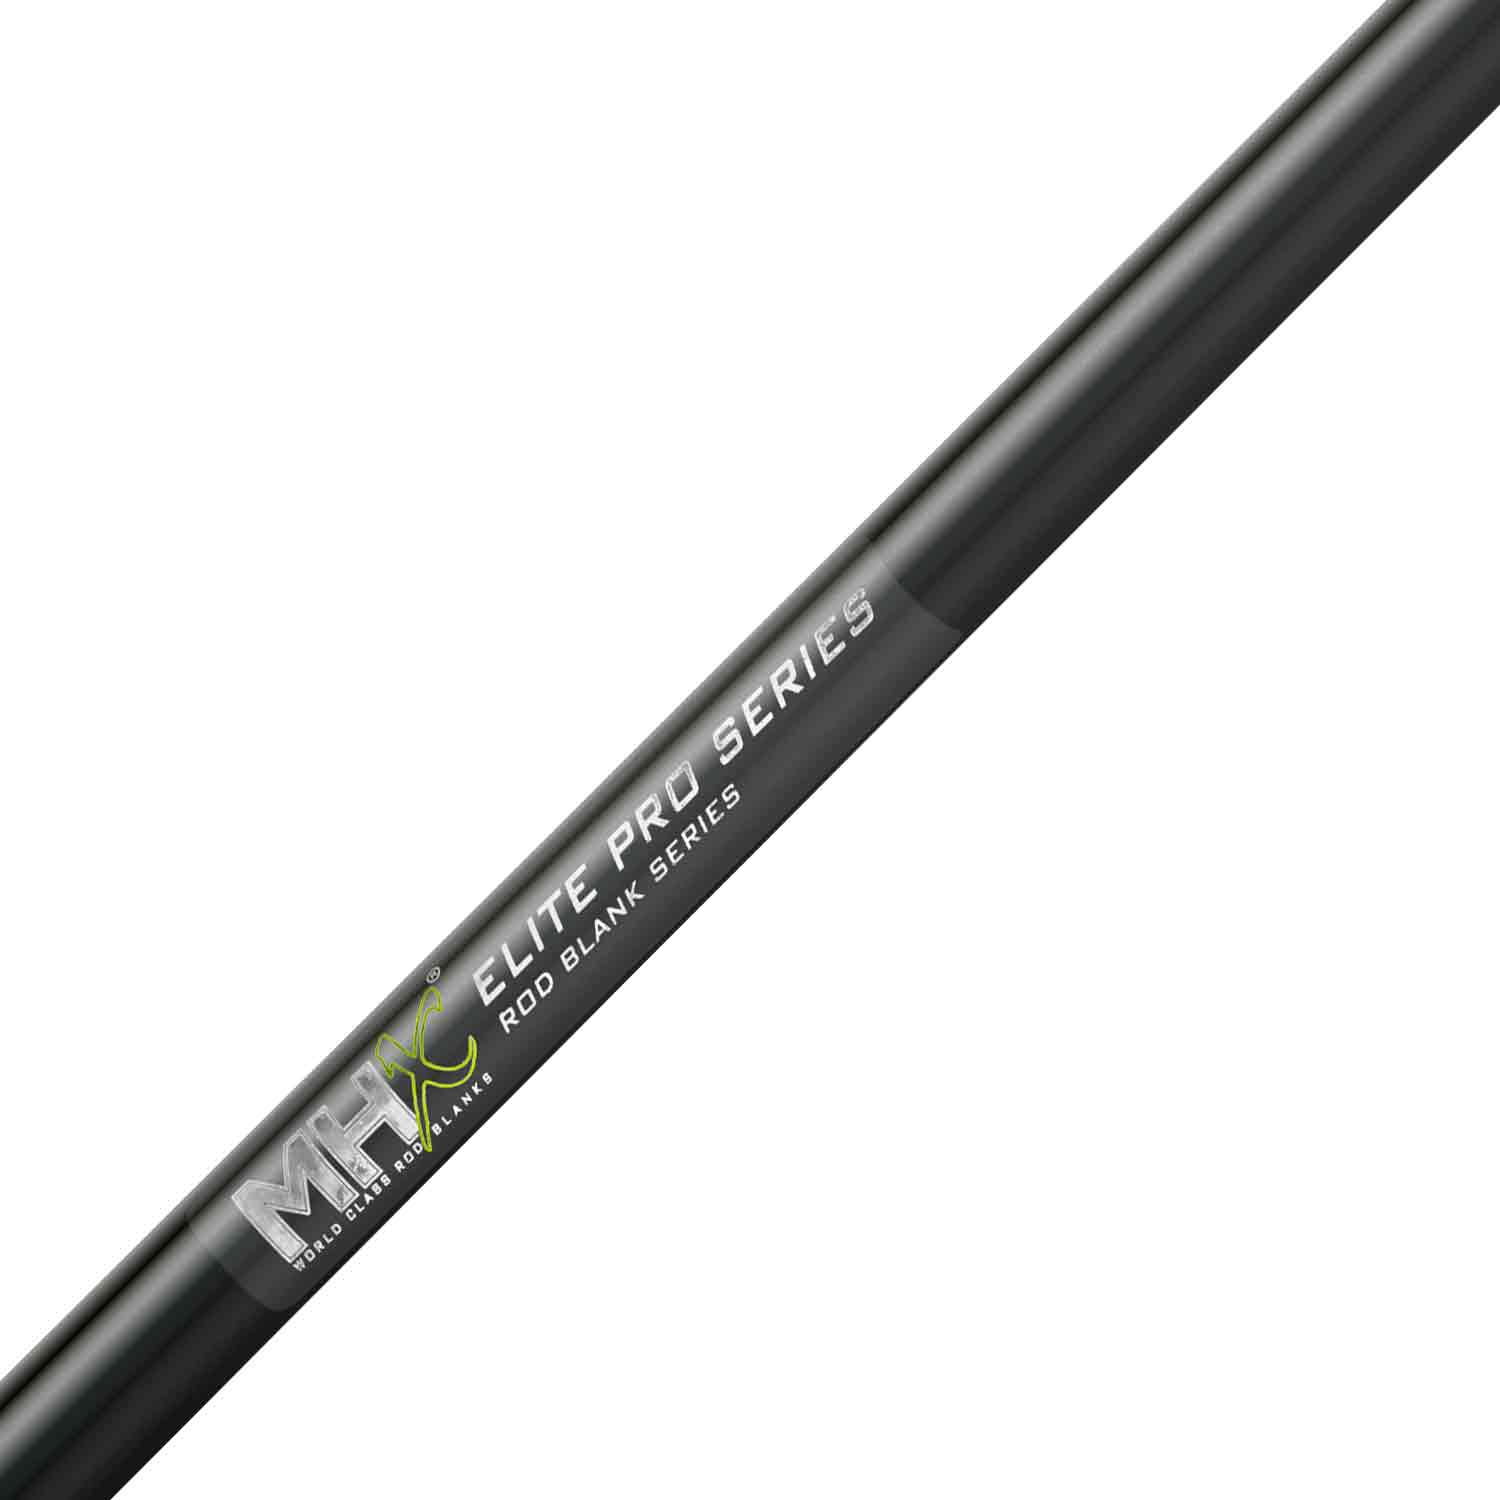 MHX 7'2" Med-Light Elite Pro Rod Blank - NEPS86MLF-MHX